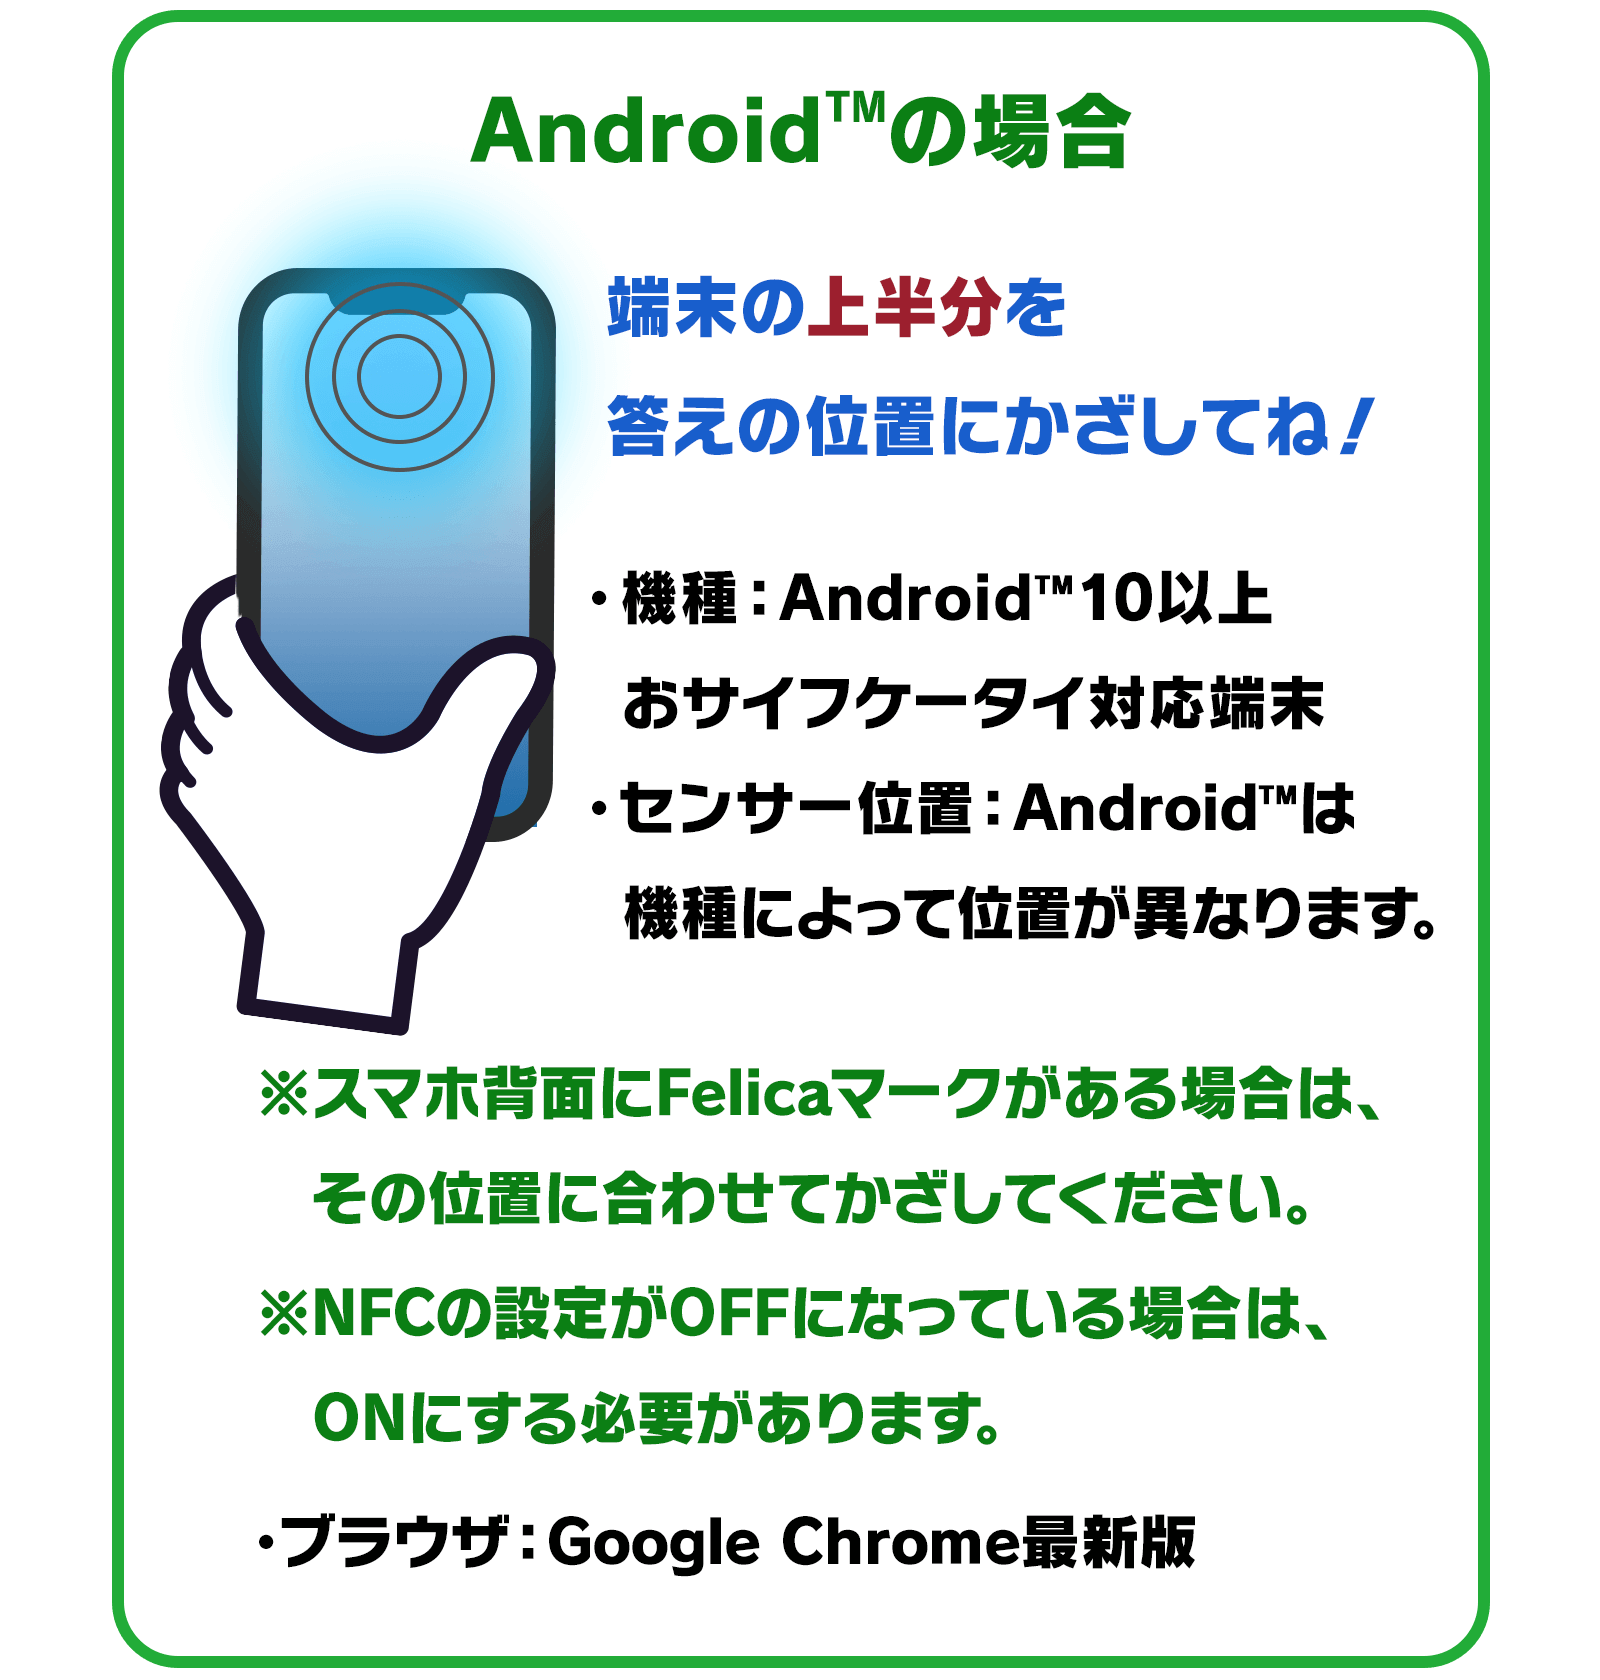 Android™の場合…端末の上半分を答えの位置にかざしてね！　●機種：Android™10以上　おサイフケータイ対応端末　●センサー位置：Android™は機種によって位置が異なります。※スマホ背面にFelicaマークがある場合は、その位置に合わせてかざしてください。※NFCの設定がOFFになっている場合は、ONにする必要があります。　●ブラウザ：Google Chrome最新版